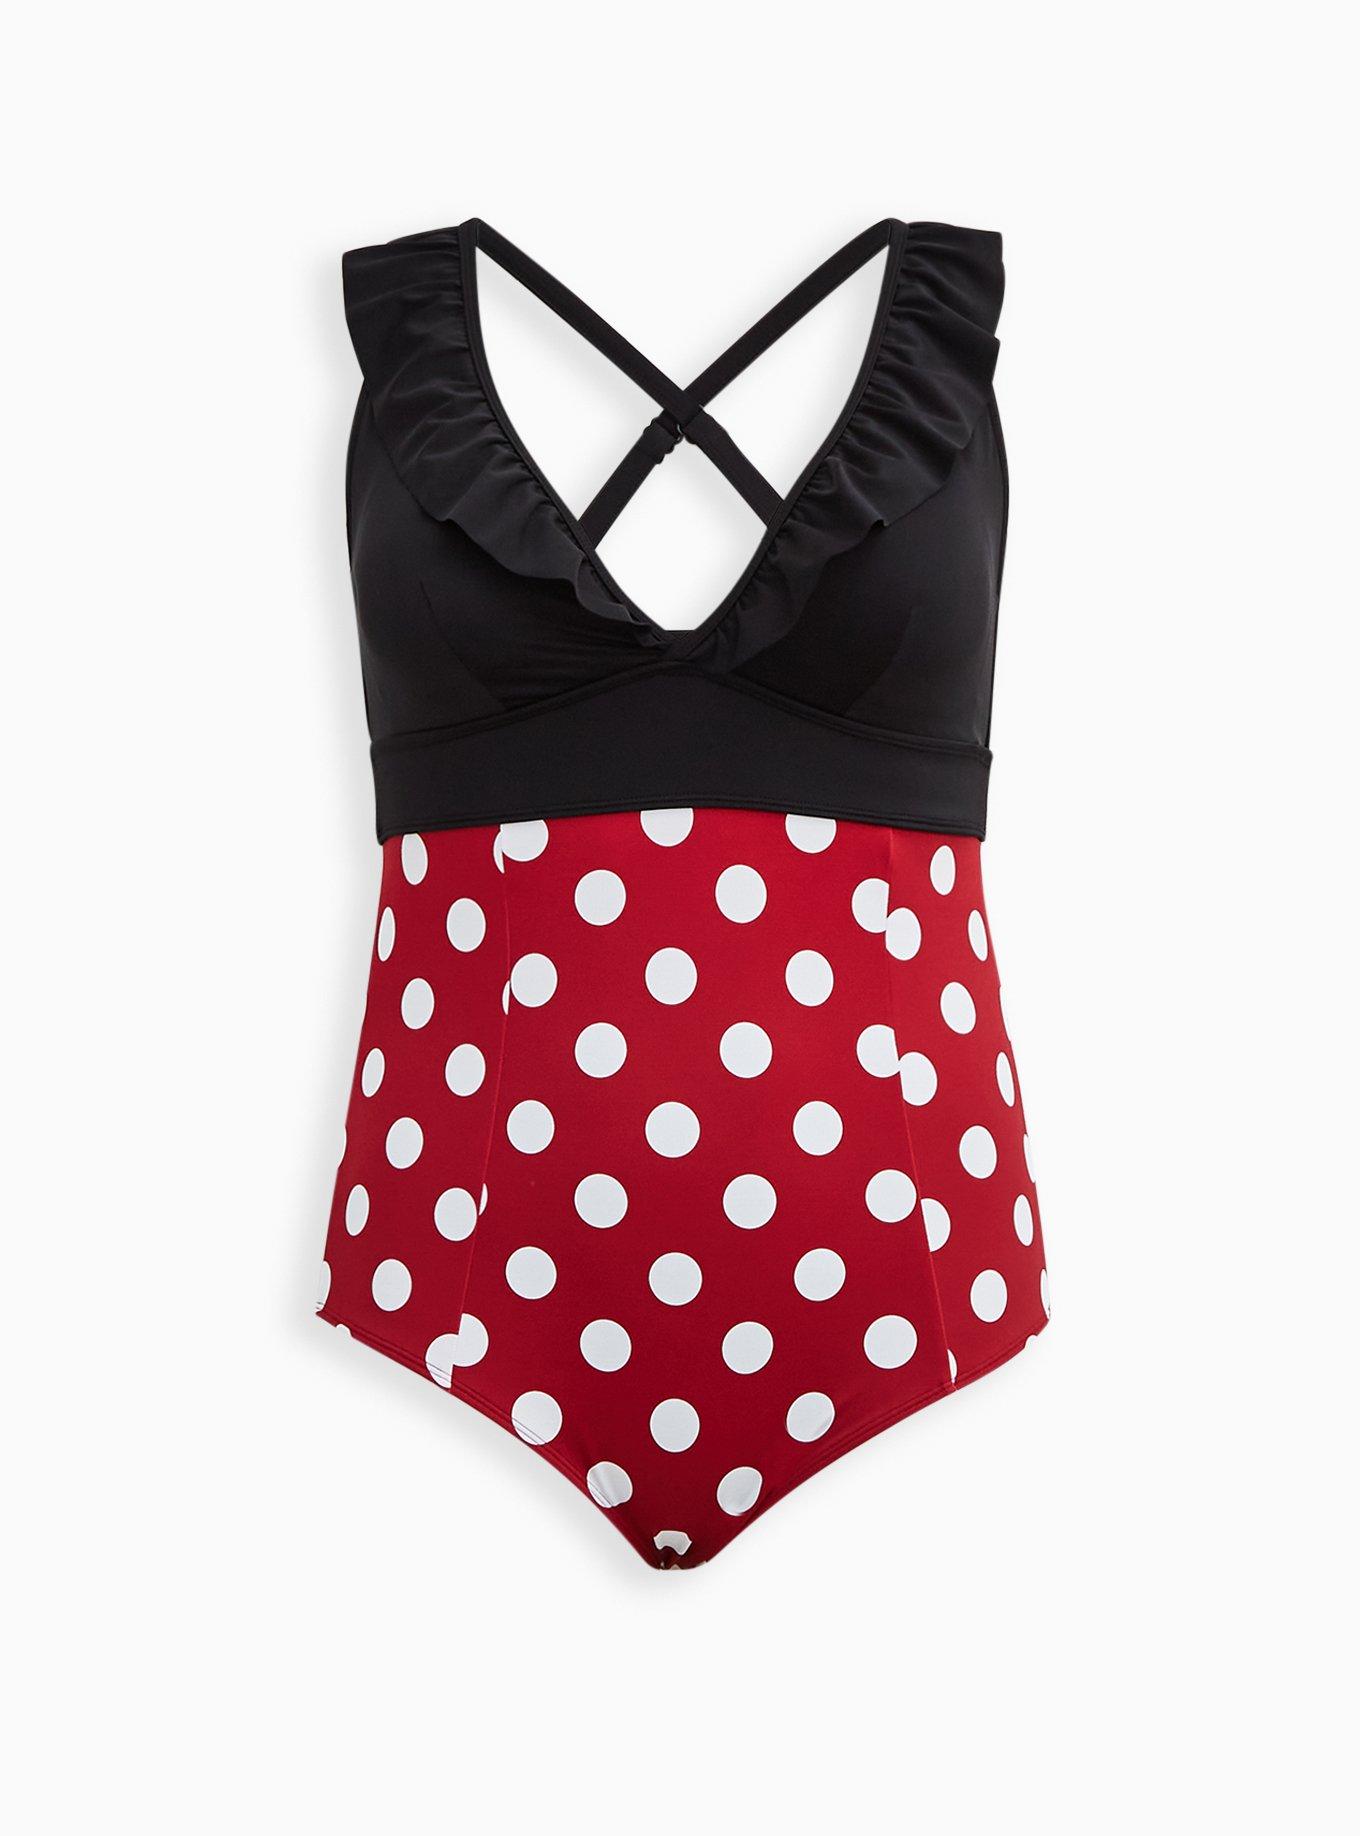 Plus Size - Disney Minnie Mouse Black Bow Kimono Swim Cover-Up - Torrid